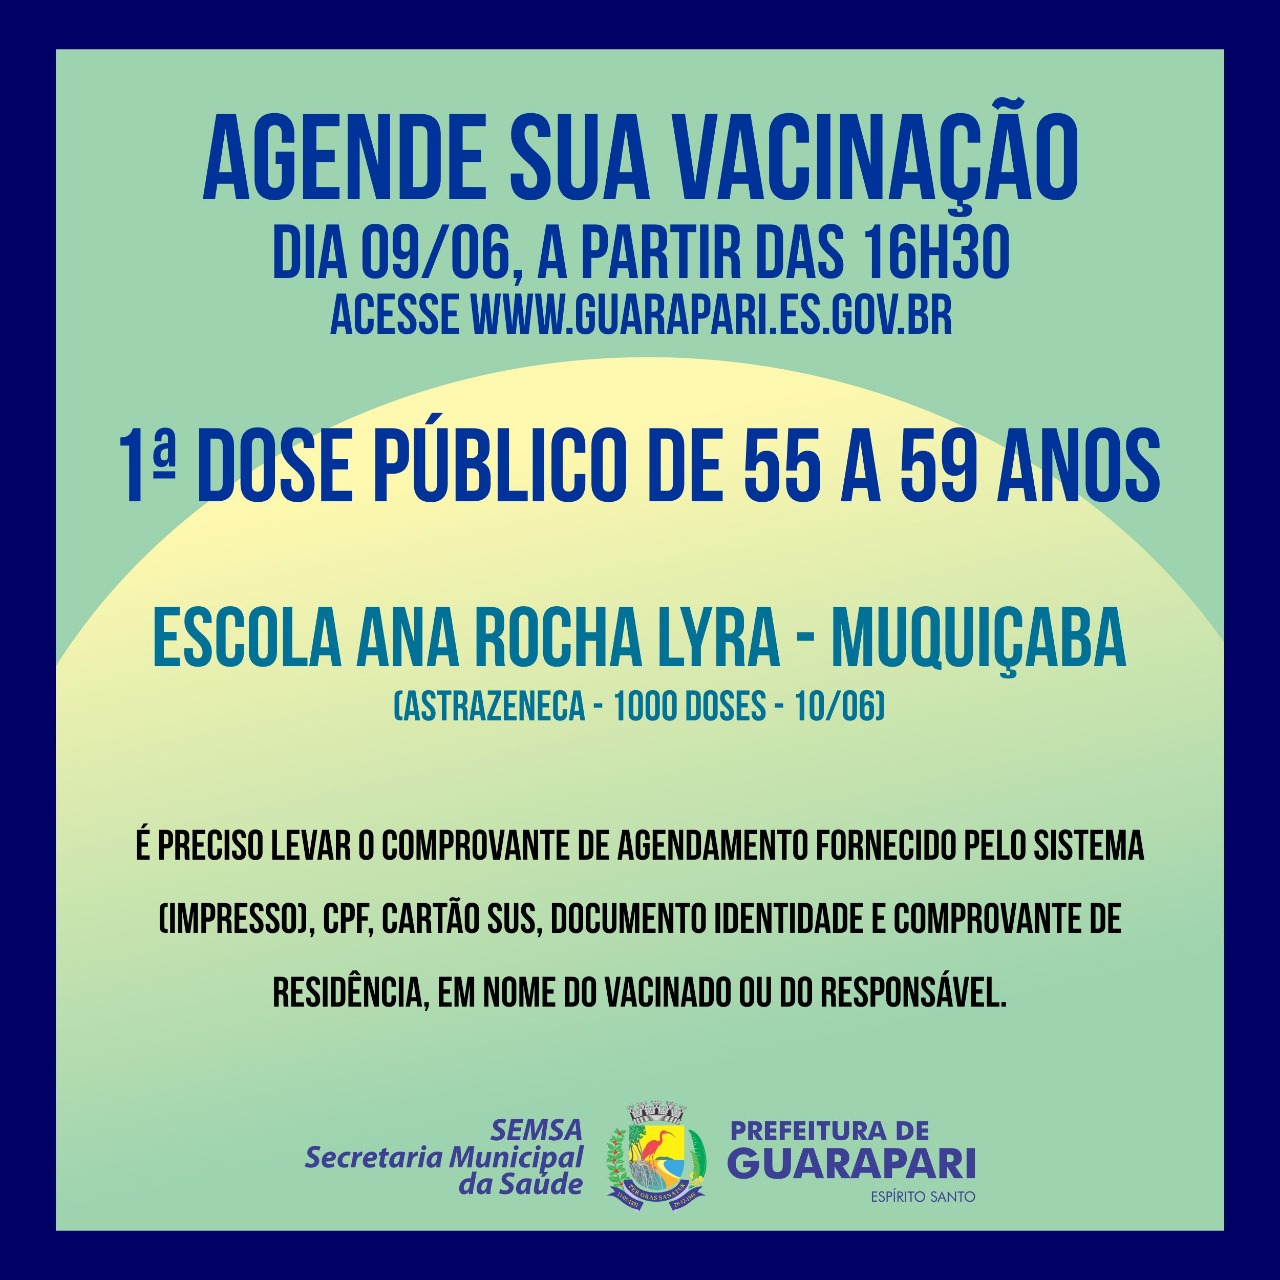 Covid-19: Nesta quarta-feira tem agendamento de vacinação para pessoas entre 55 e 59 anos em Guarapari  – Astrazeneca 